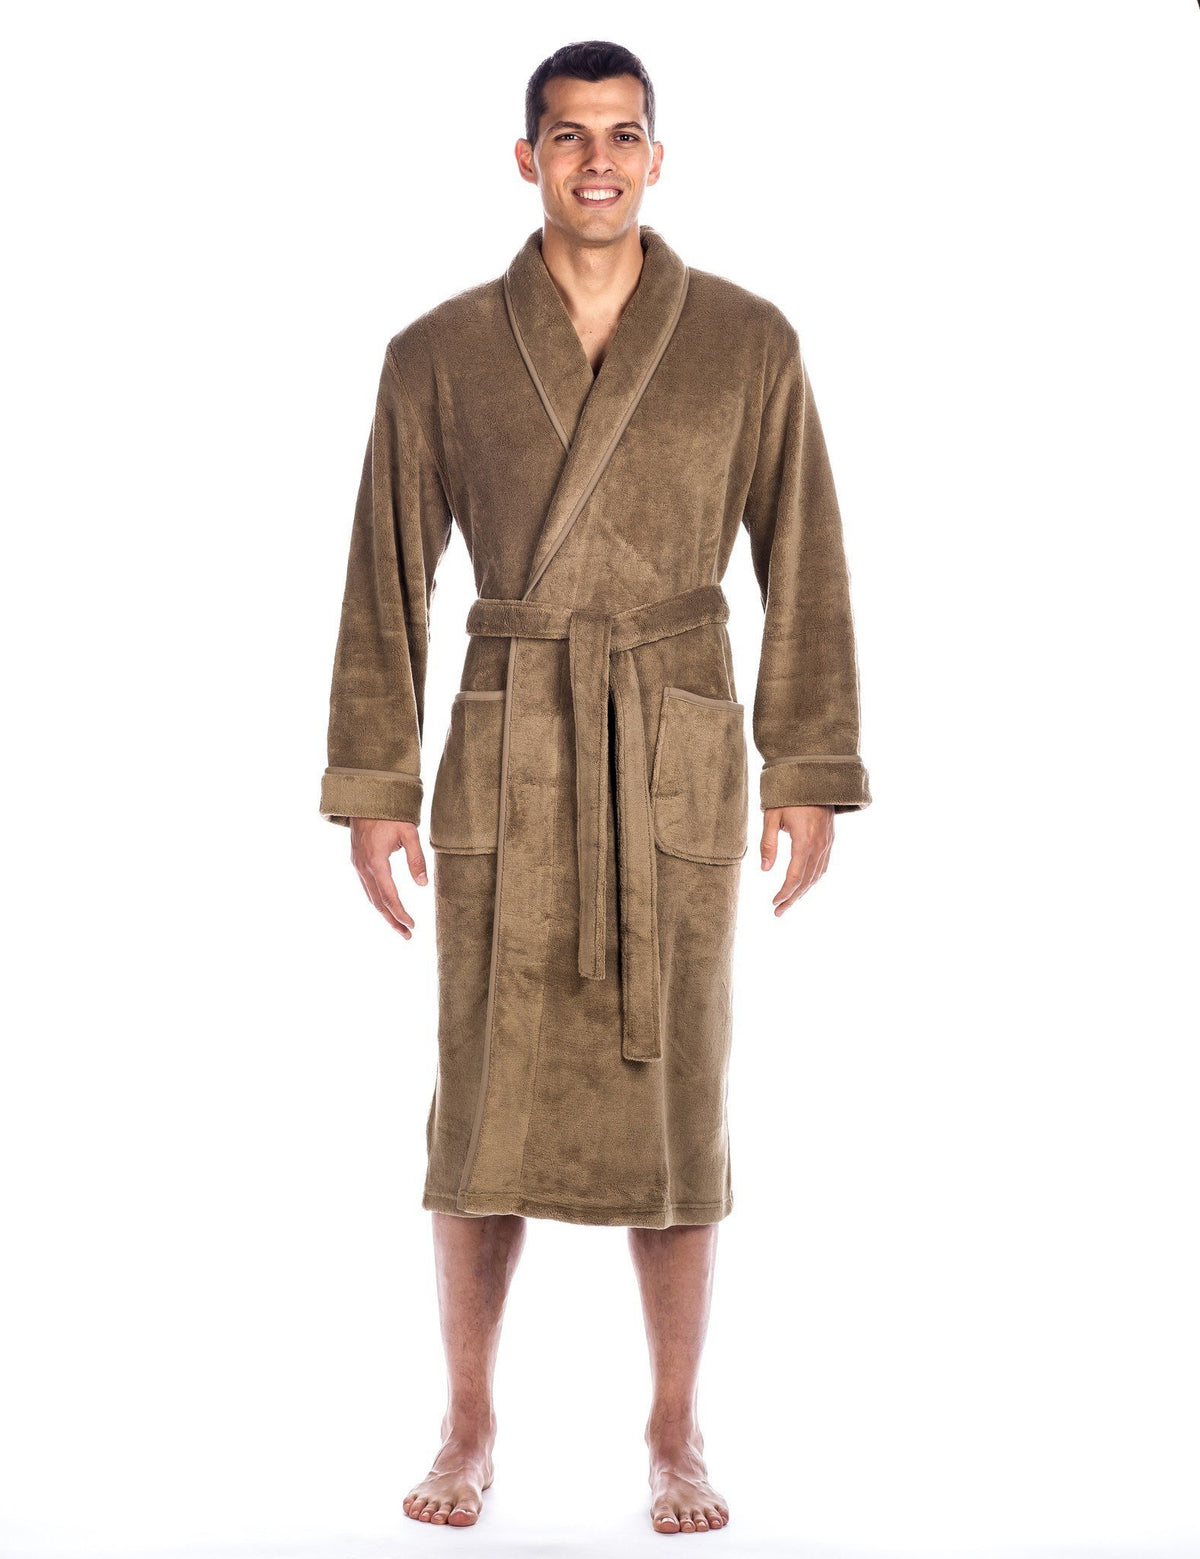 Men's Premium Coral Fleece Plush Spa/Bath Robe - Capuccino